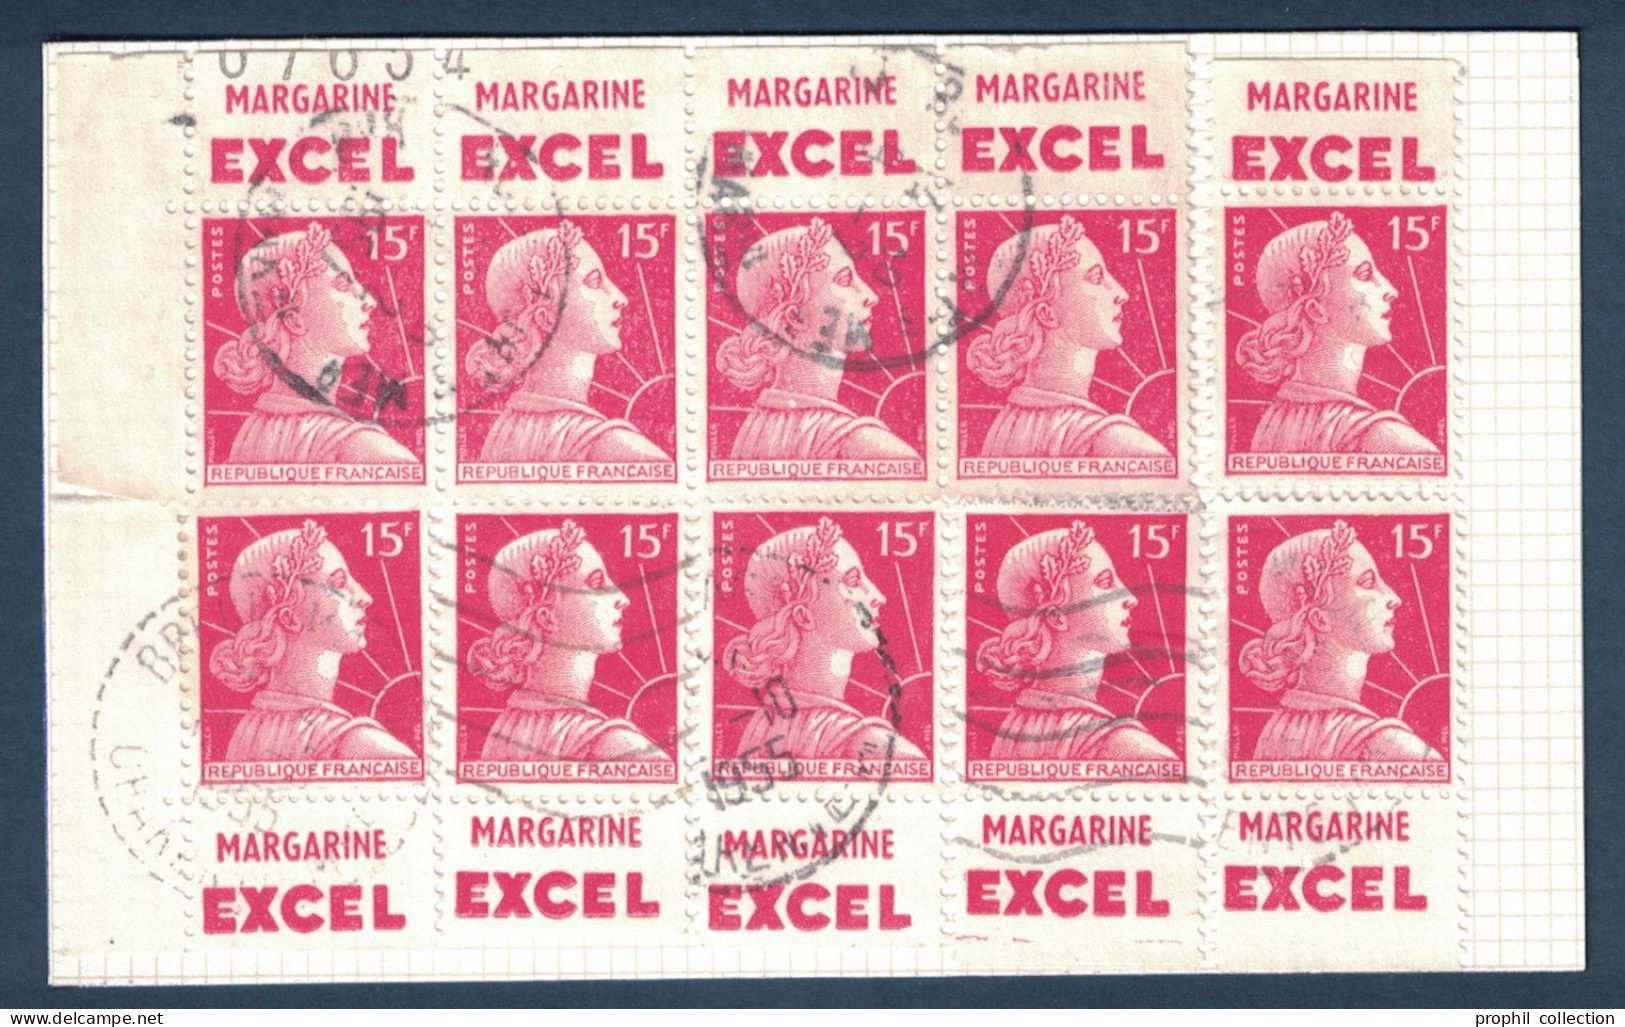 CARNET RECONSTITUÉ De 10 TIMBRES Au TYPE MARIANNE De MULLER N° 1011 Avec BANDES PUBLICITÉ MARGARINE EXCEL - Used Stamps